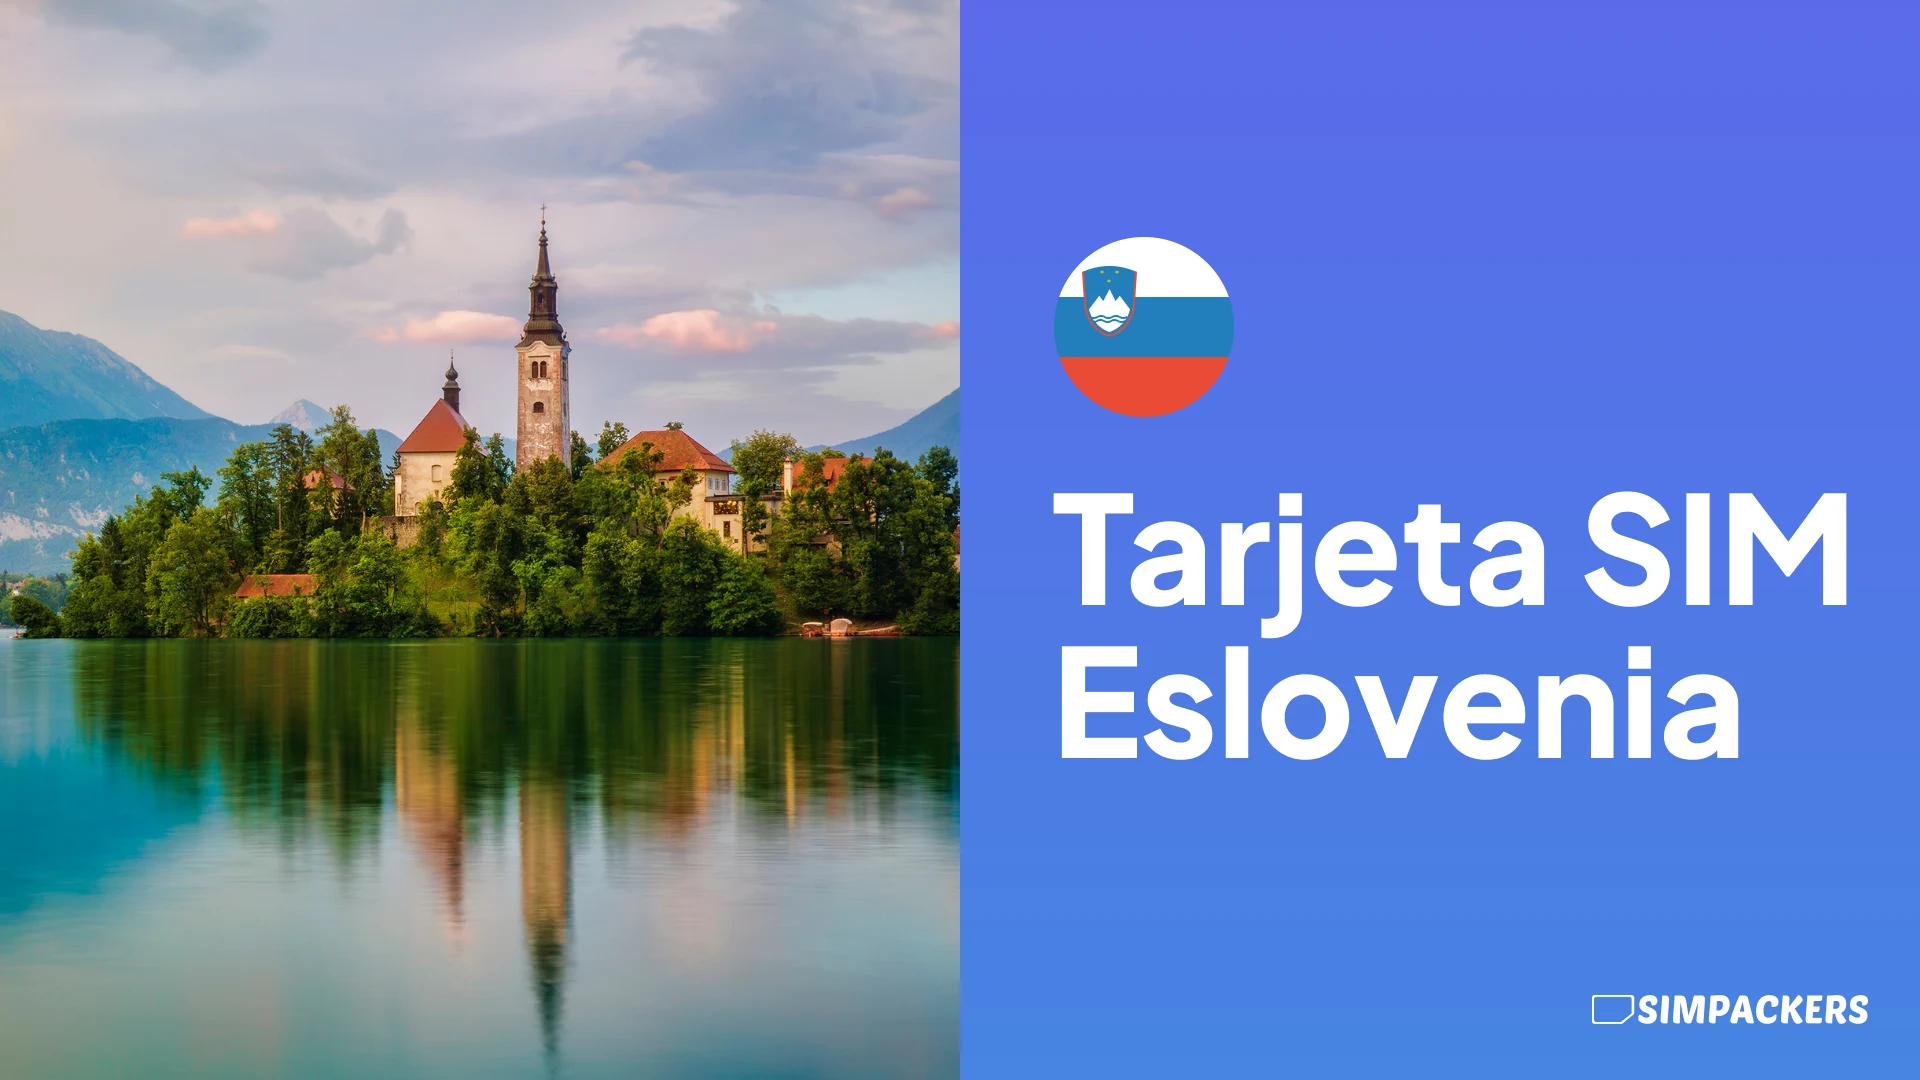 ES/FEATURED_IMAGES/tarjeta-sim-eslovenia.webp